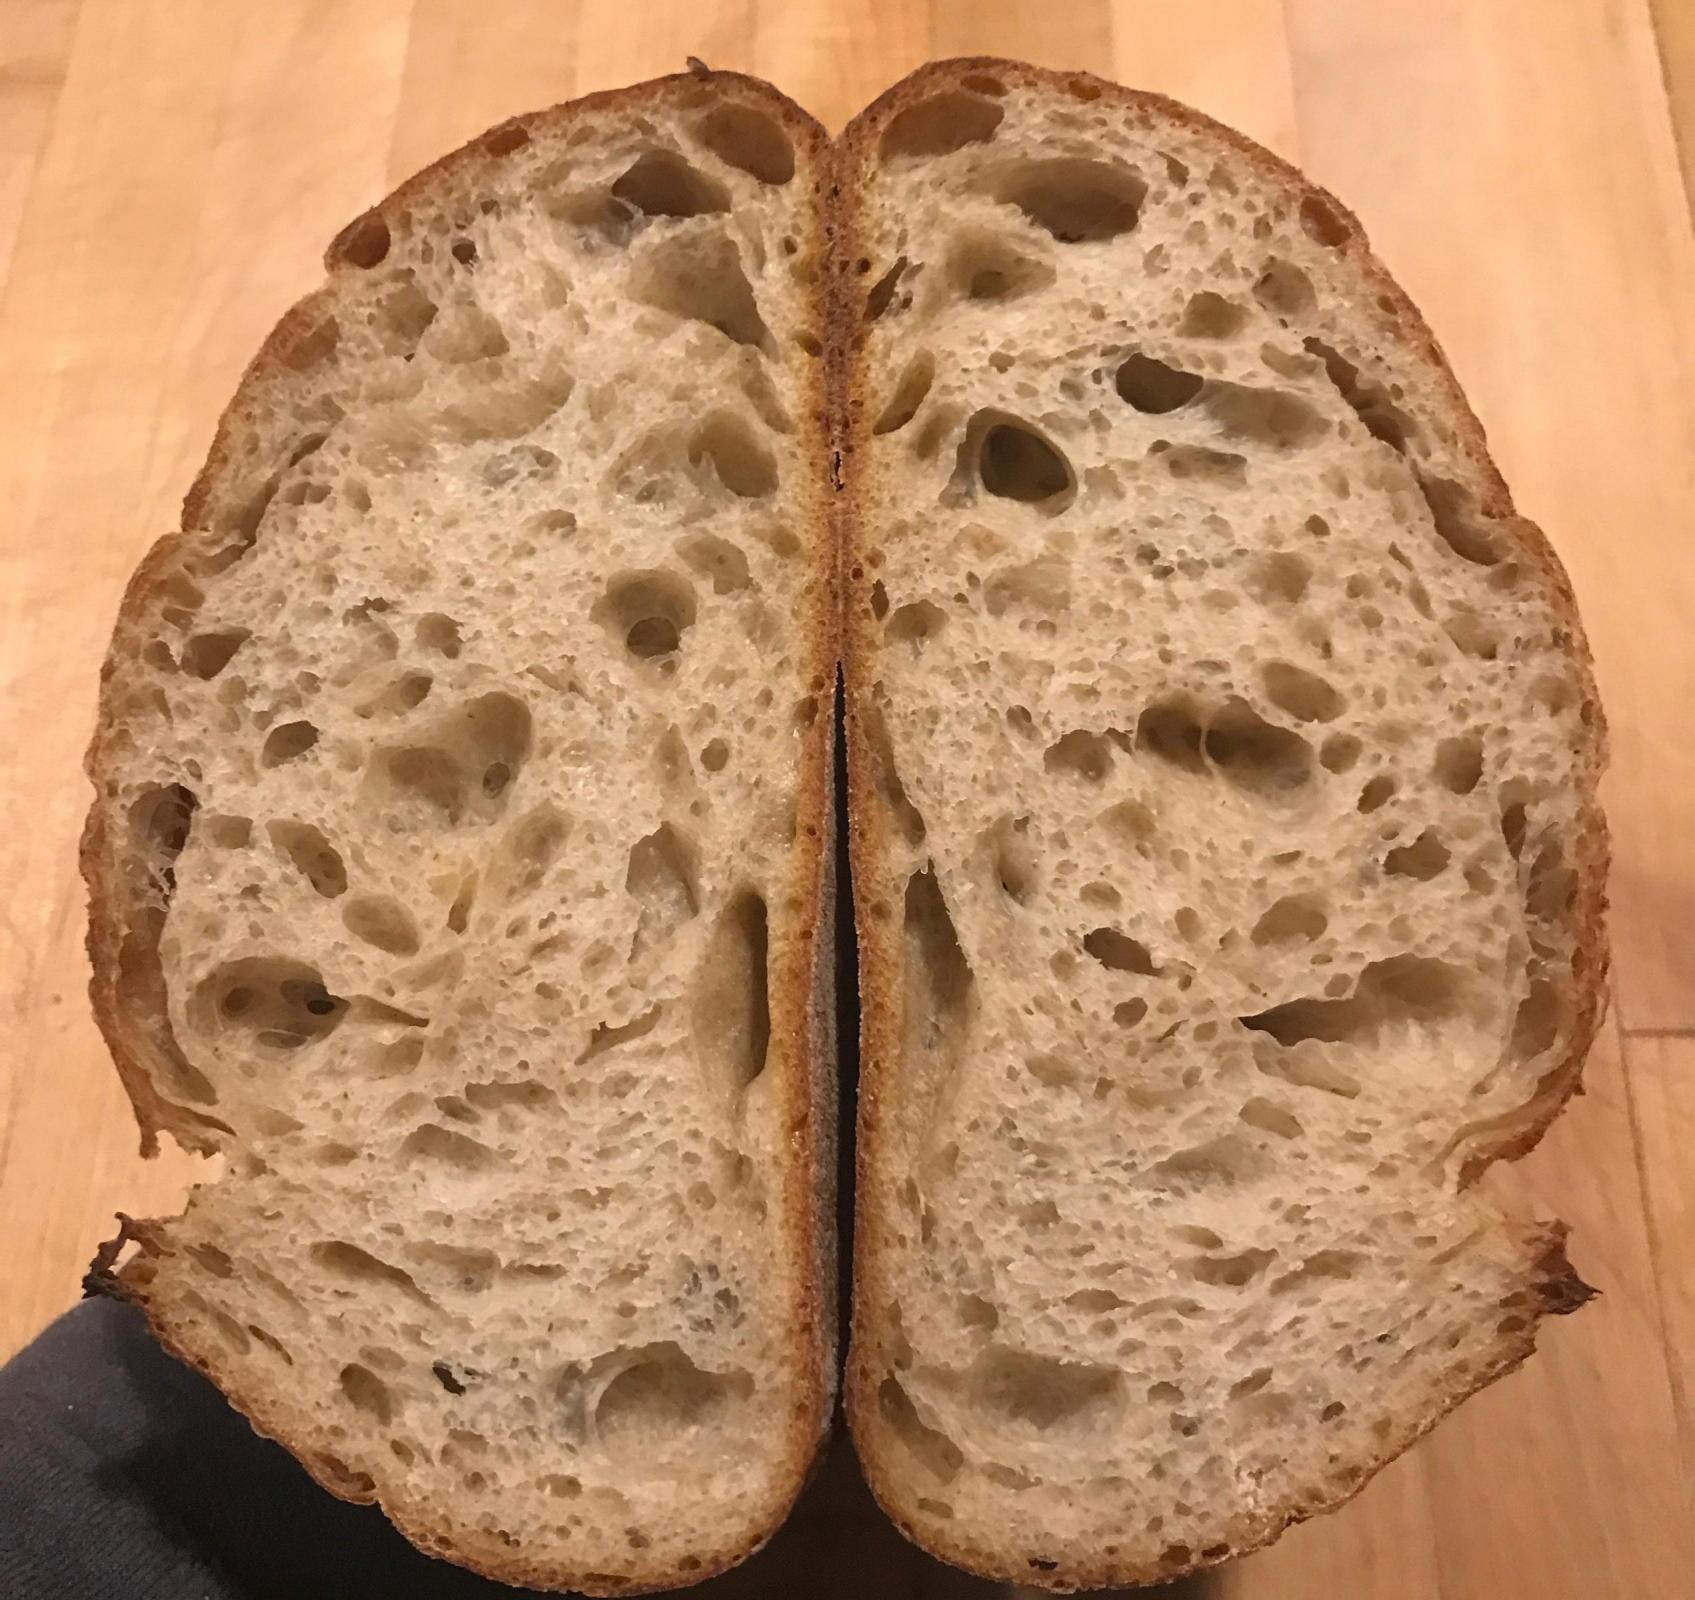 Pan au levain